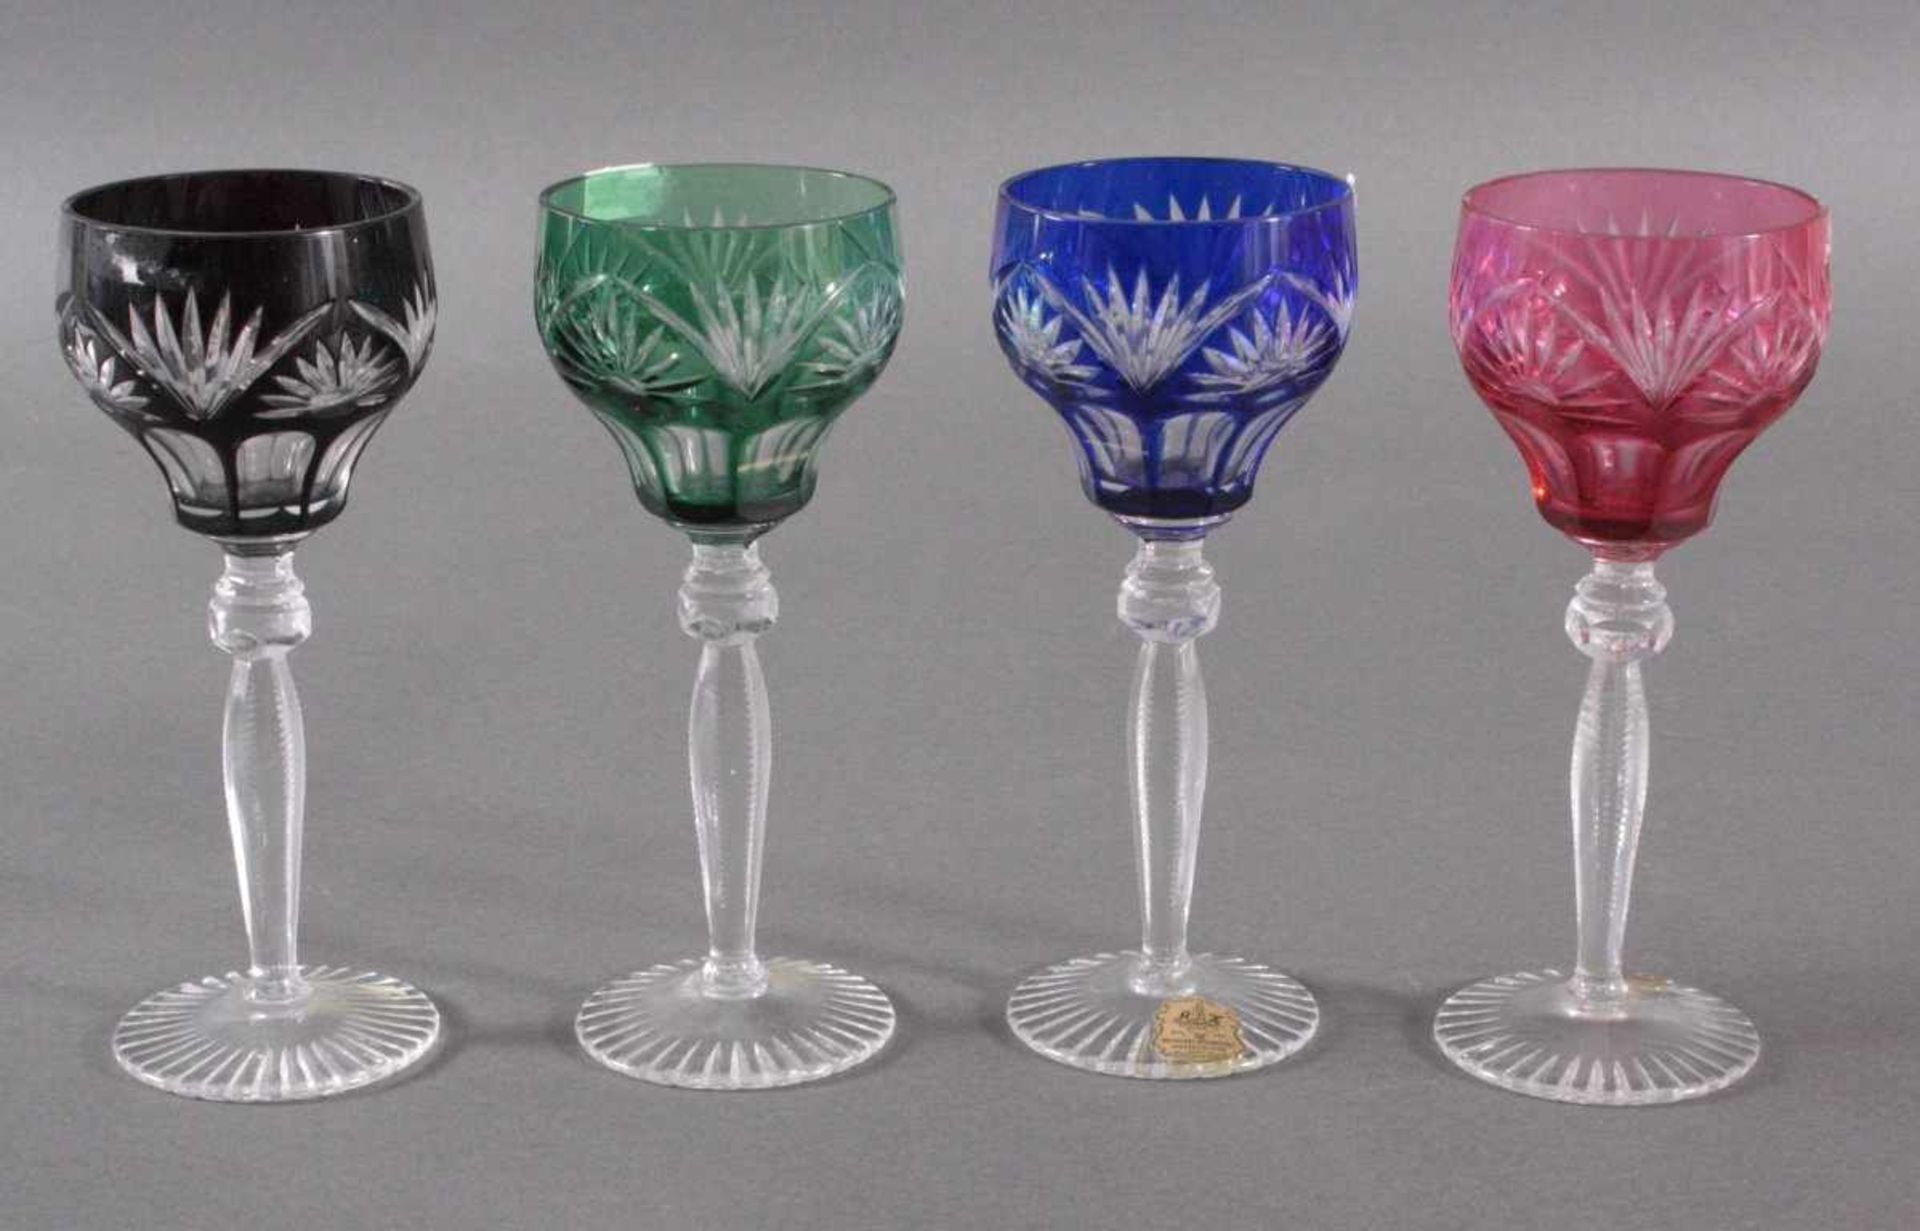 4 Römer Gläser, Hohlfeuer IlmenauBleikristall, blau, grün, rot und rubinrot überfangen,geschliffen